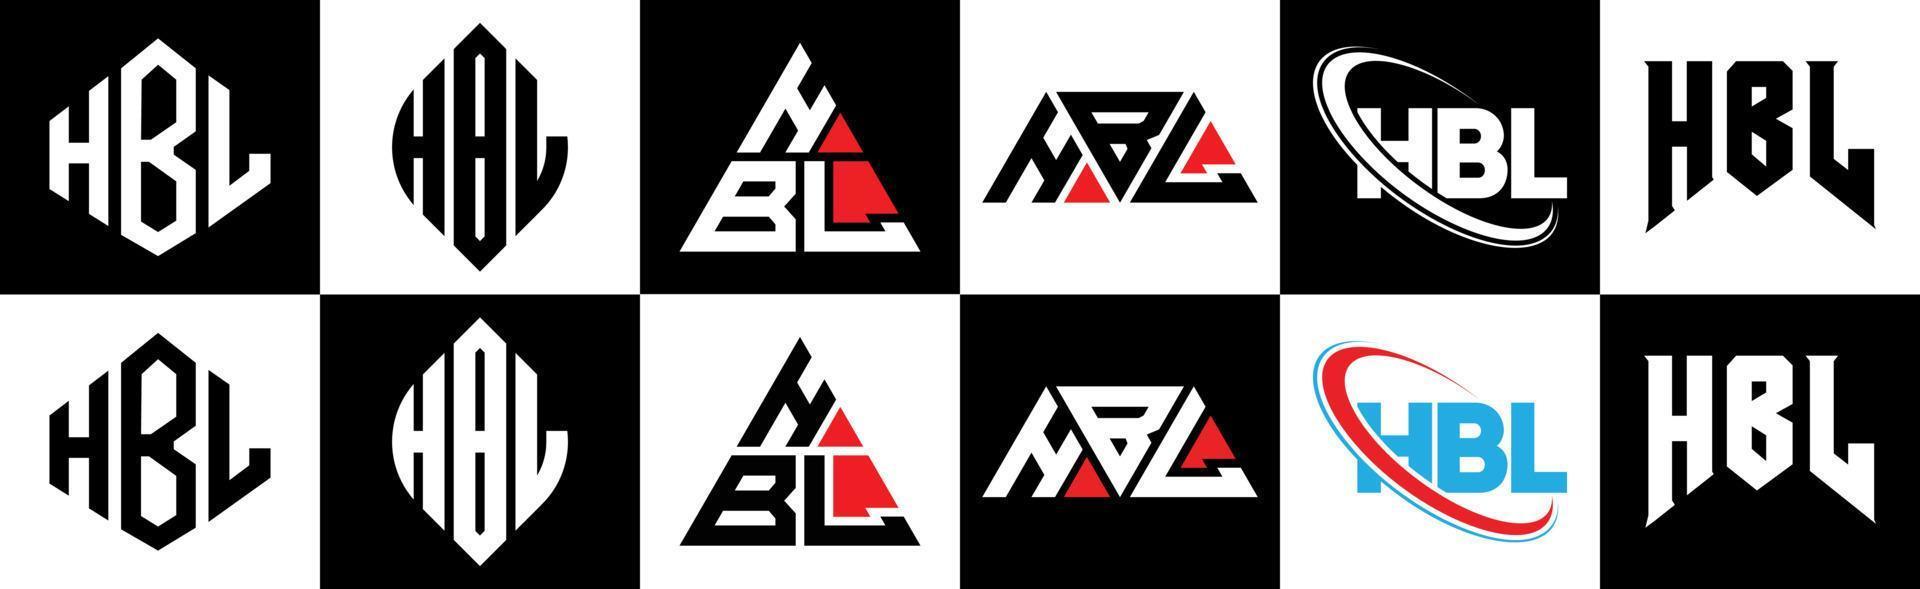 hbl brief logo ontwerp in zes stijl. hbl veelhoek, cirkel, driehoek, zeshoek, vlak en gemakkelijk stijl met zwart en wit kleur variatie brief logo reeks in een tekengebied. hbl minimalistische en klassiek logo vector